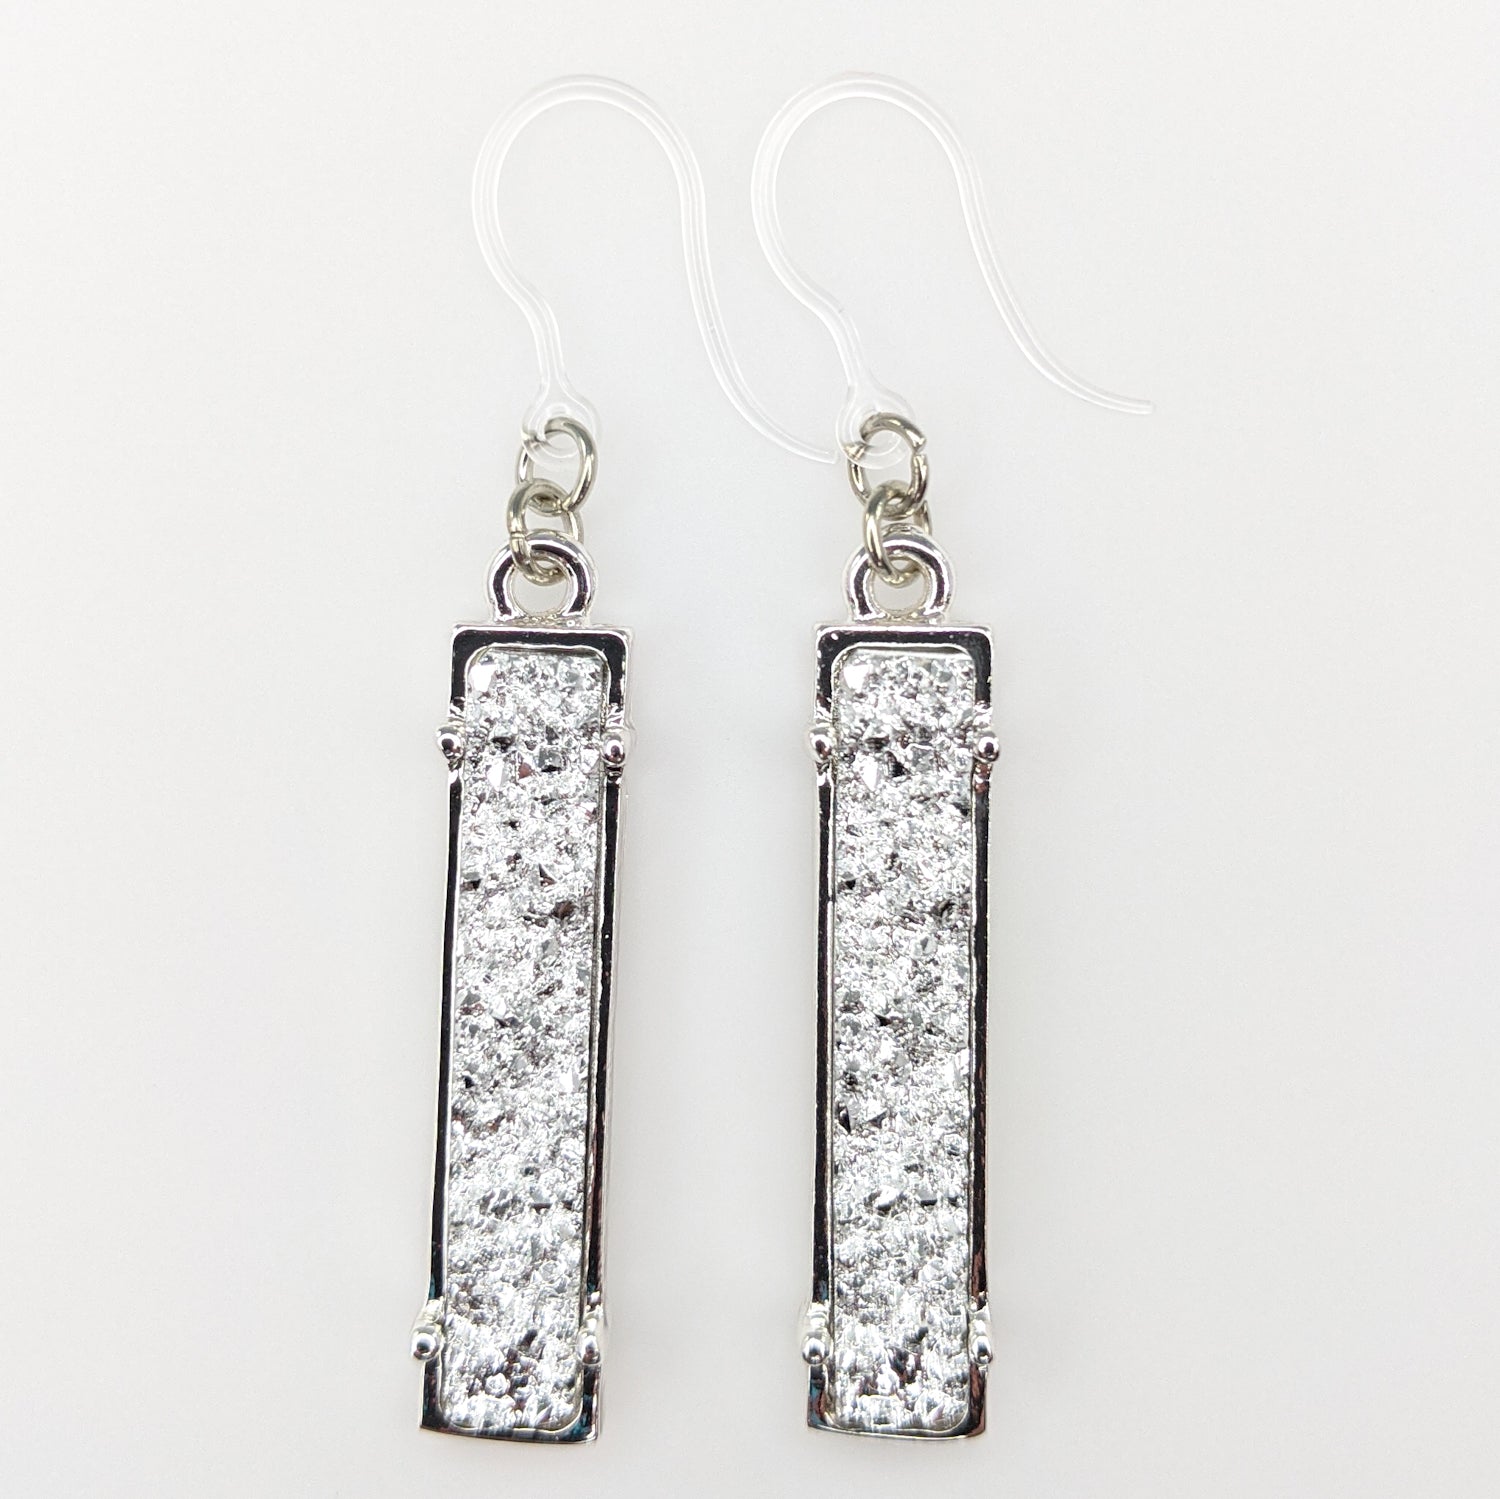 Faux Druzy Bar Earrings (Dangles) - silver/silver